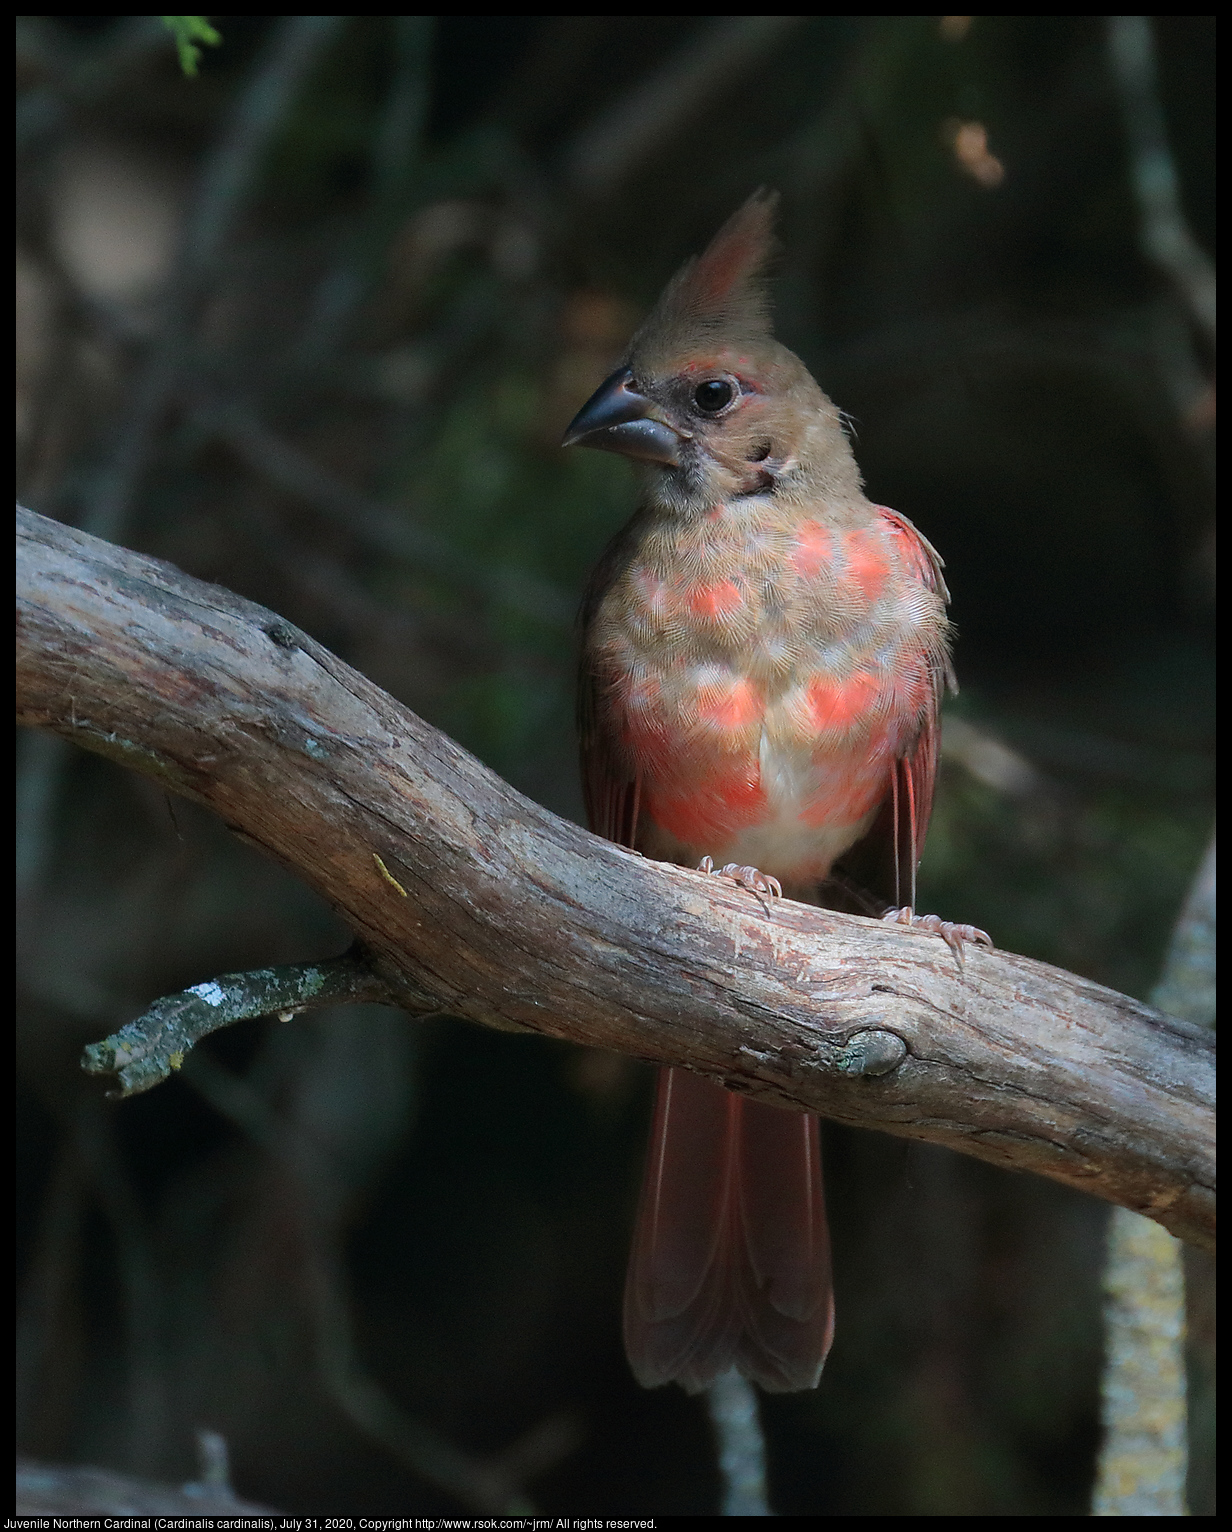 Juvenile Northern Cardinal (Cardinalis cardinalis), July 31, 2020